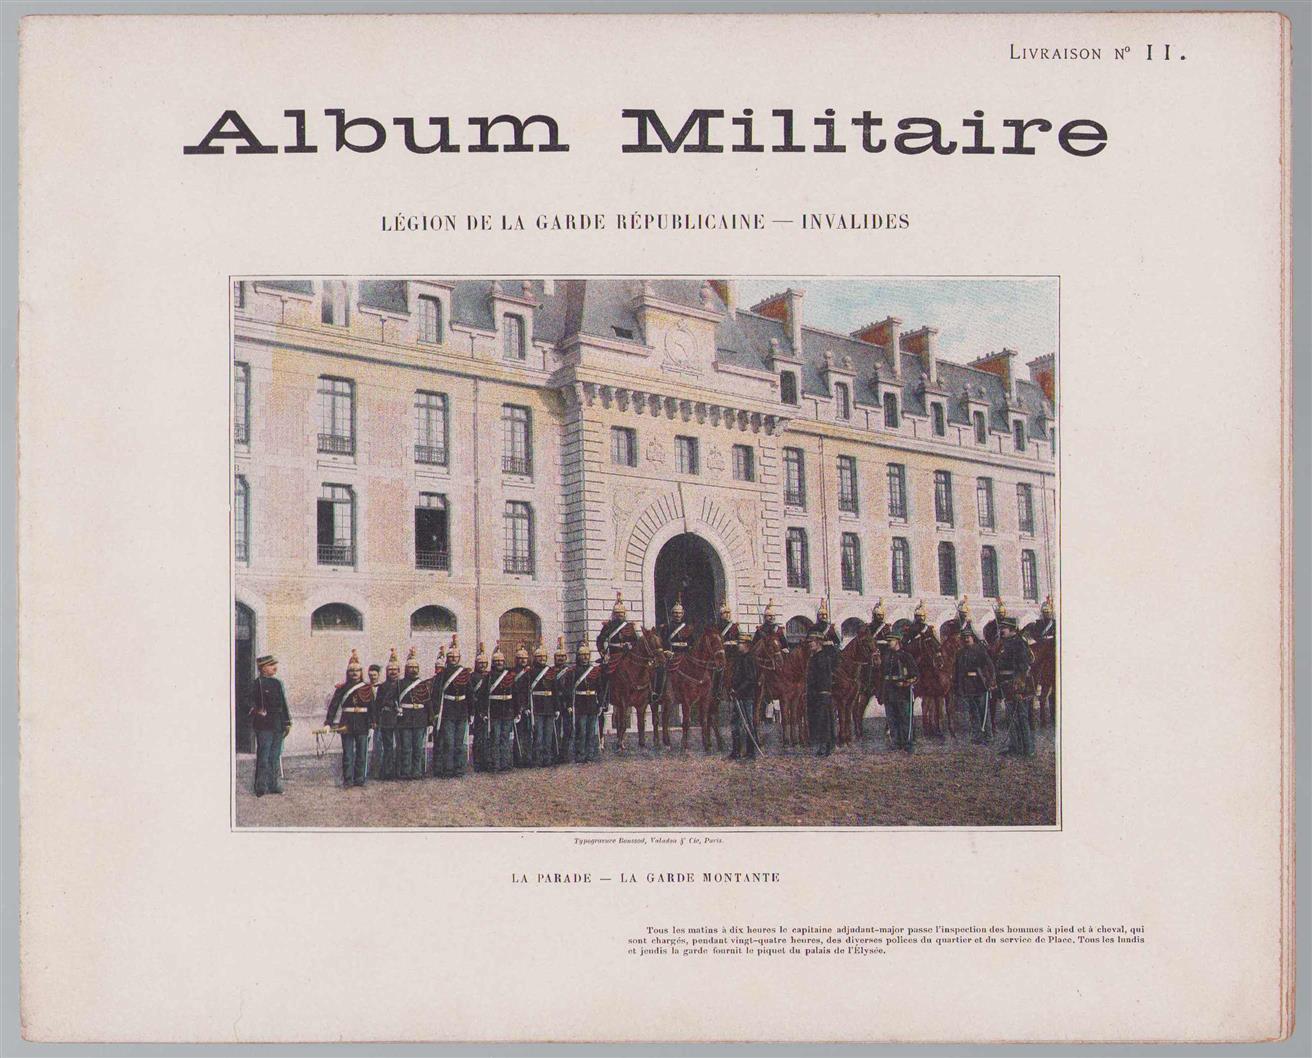 n.n - Album militaire de l'Armee francaise. Legion de la garde republicaine invalides